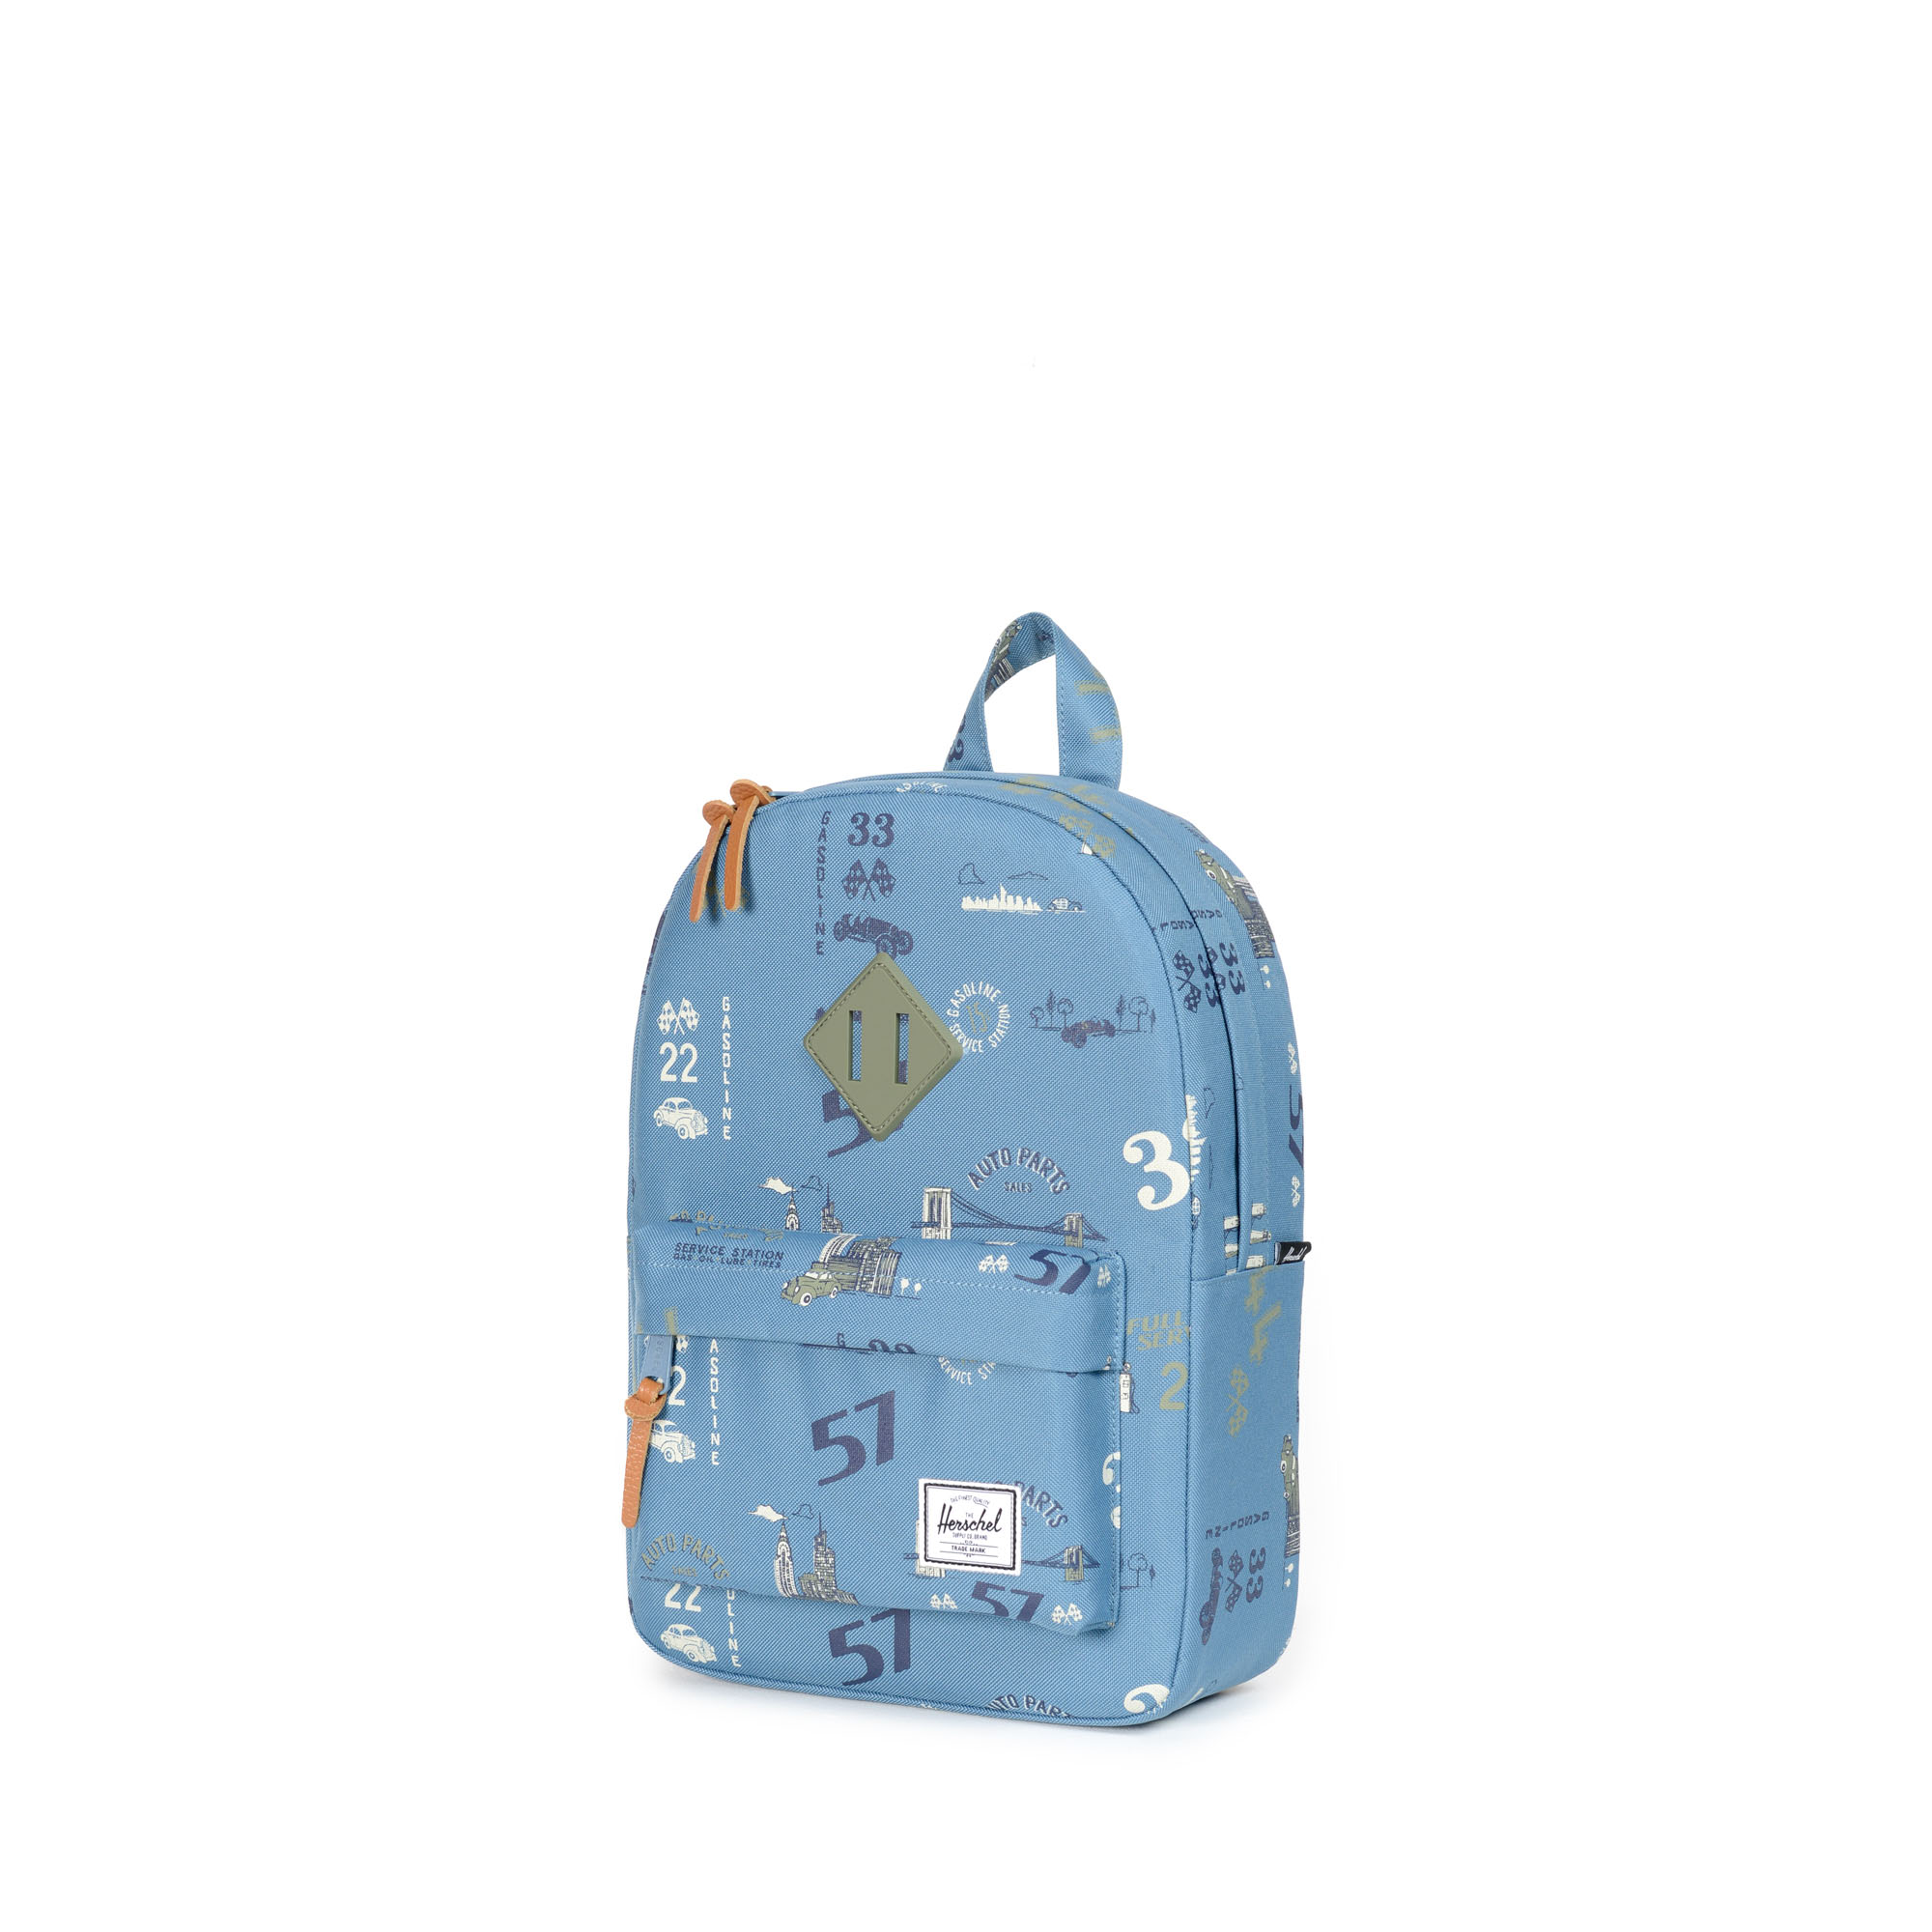 Heritage Backpack Kids Herschel Supply Company - roblox backpack google search herschel heritage backpack heritage backpack backpacks